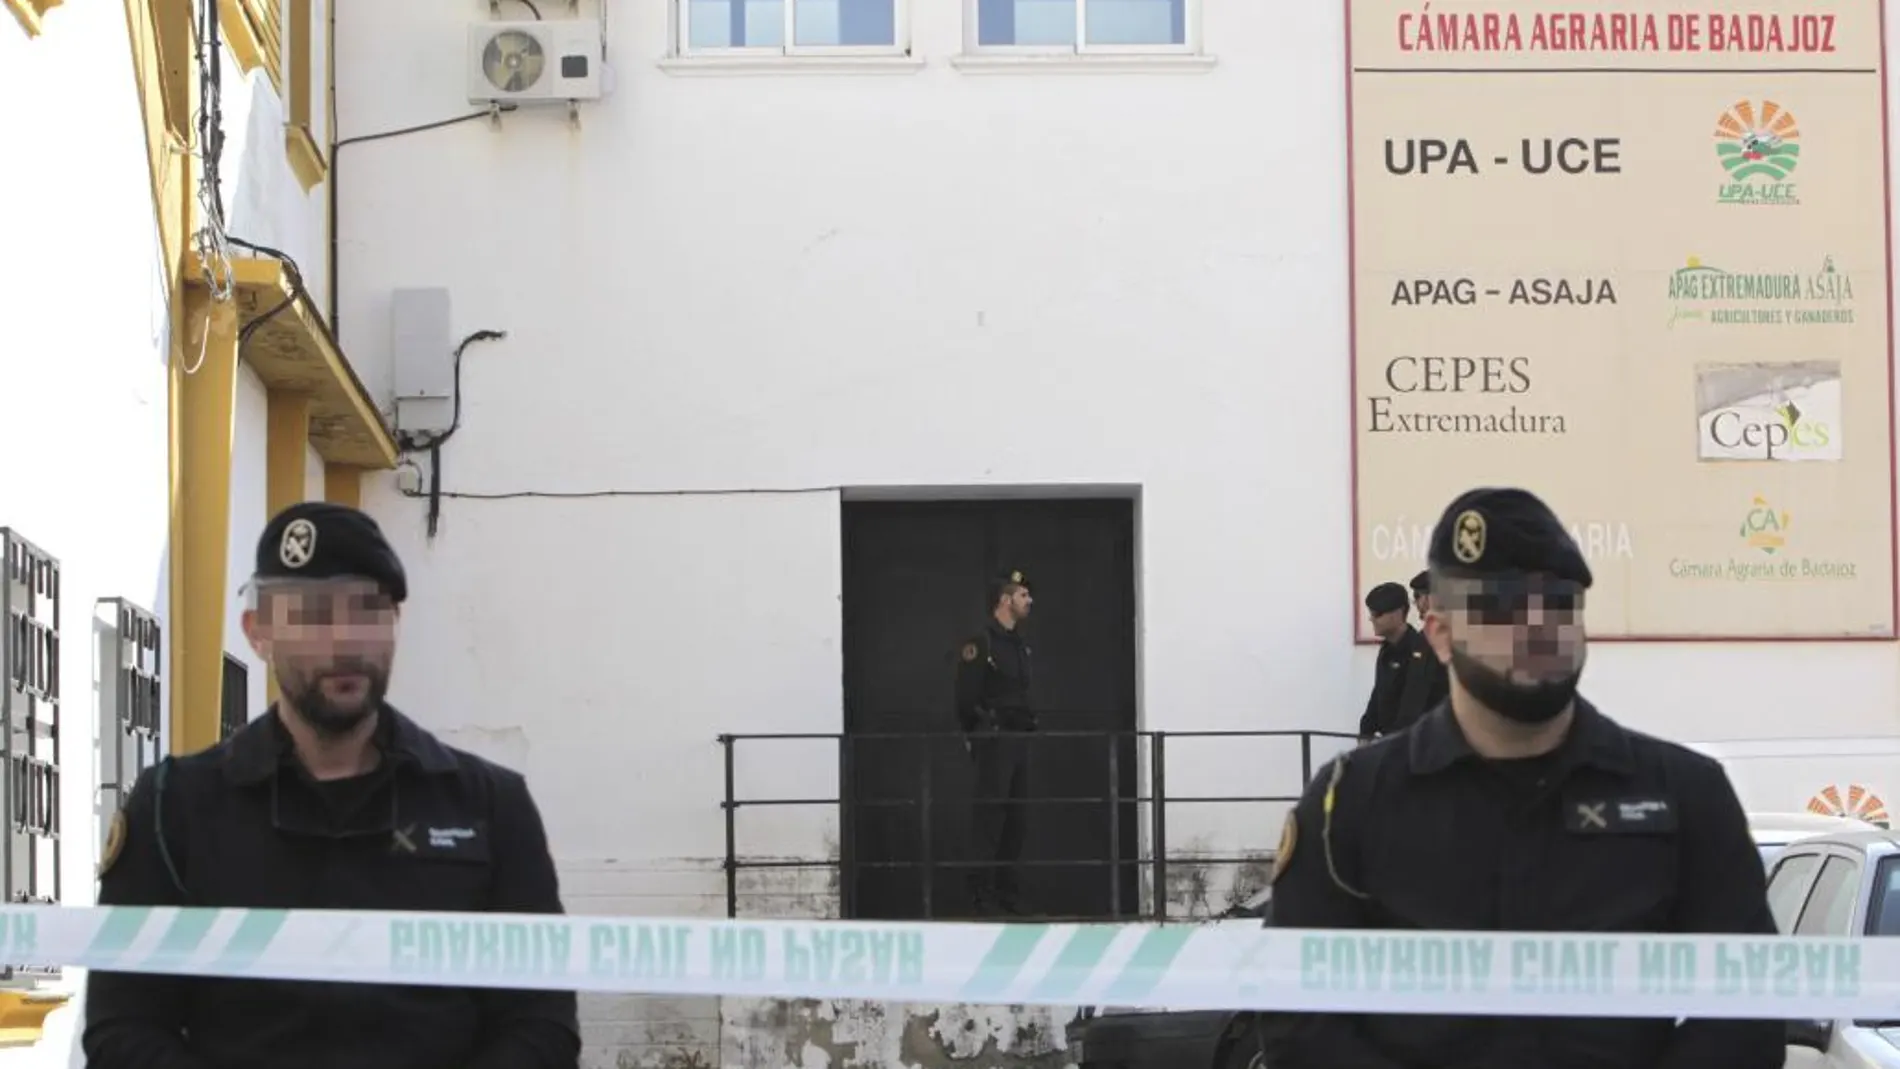 Efectivos policiales ante la fachada de la sede de la organización agraria UPA-UCE en Mérida